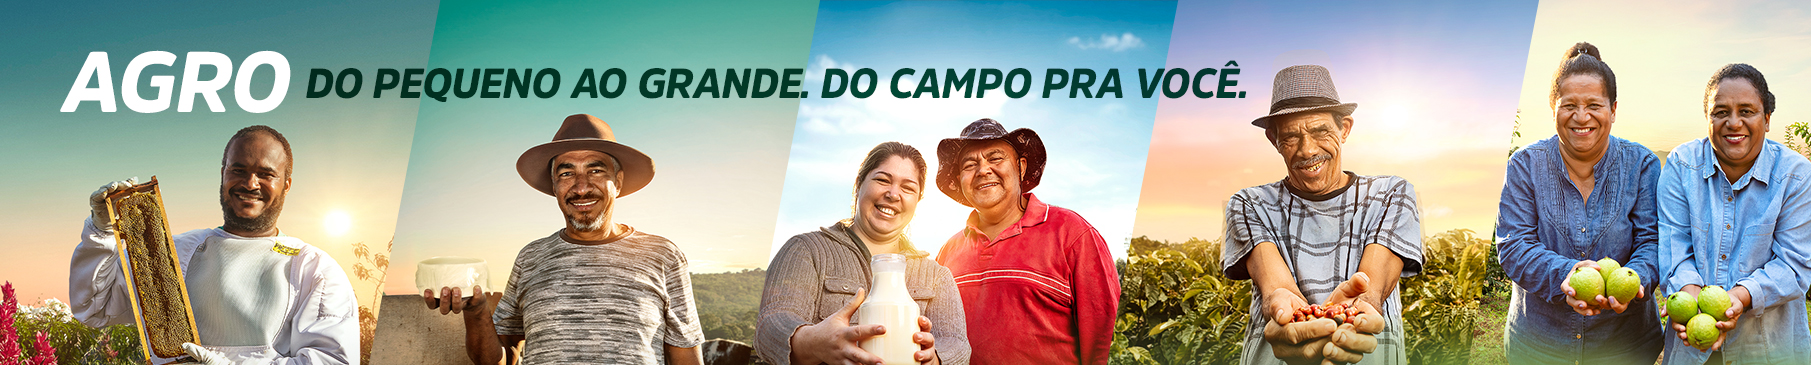 Confederação da Agricultura e Pecuária do Brasil - CNA